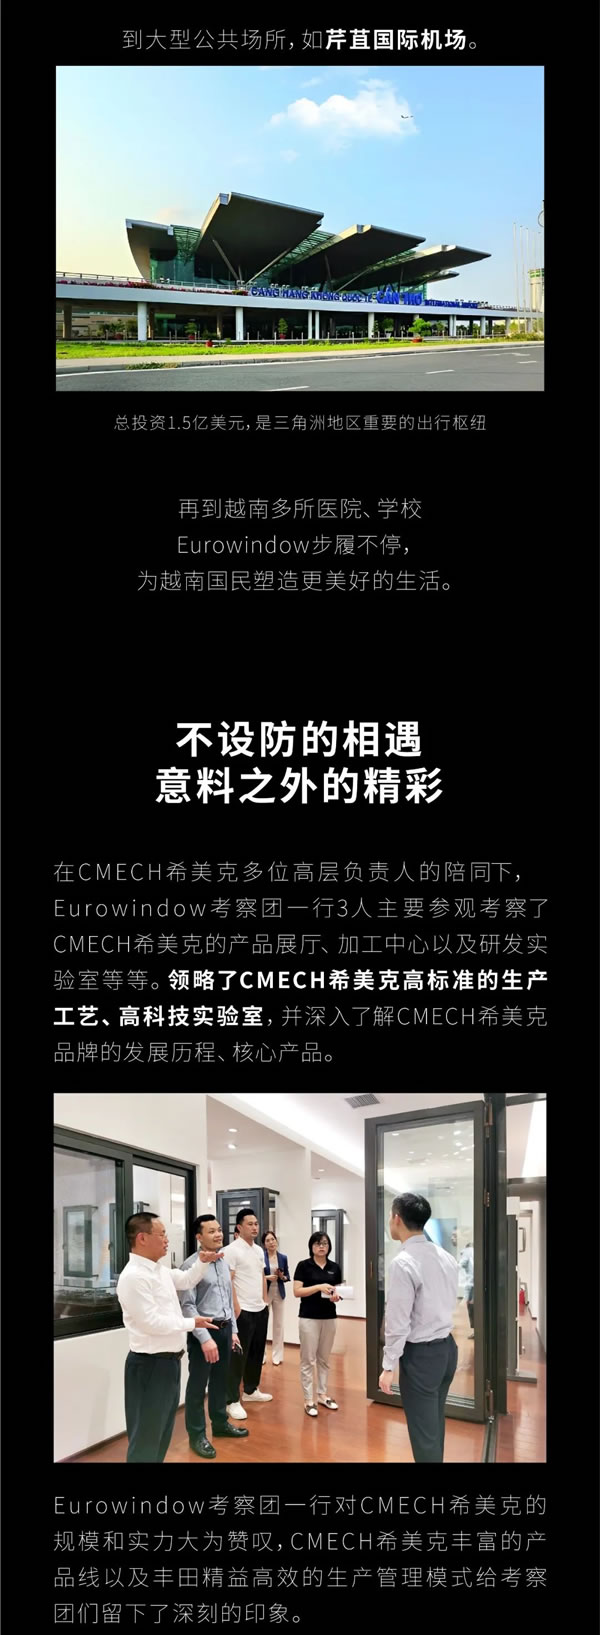 越南知名窗企 | EUROWINDOW与CMECH希美克达成深度战略合作